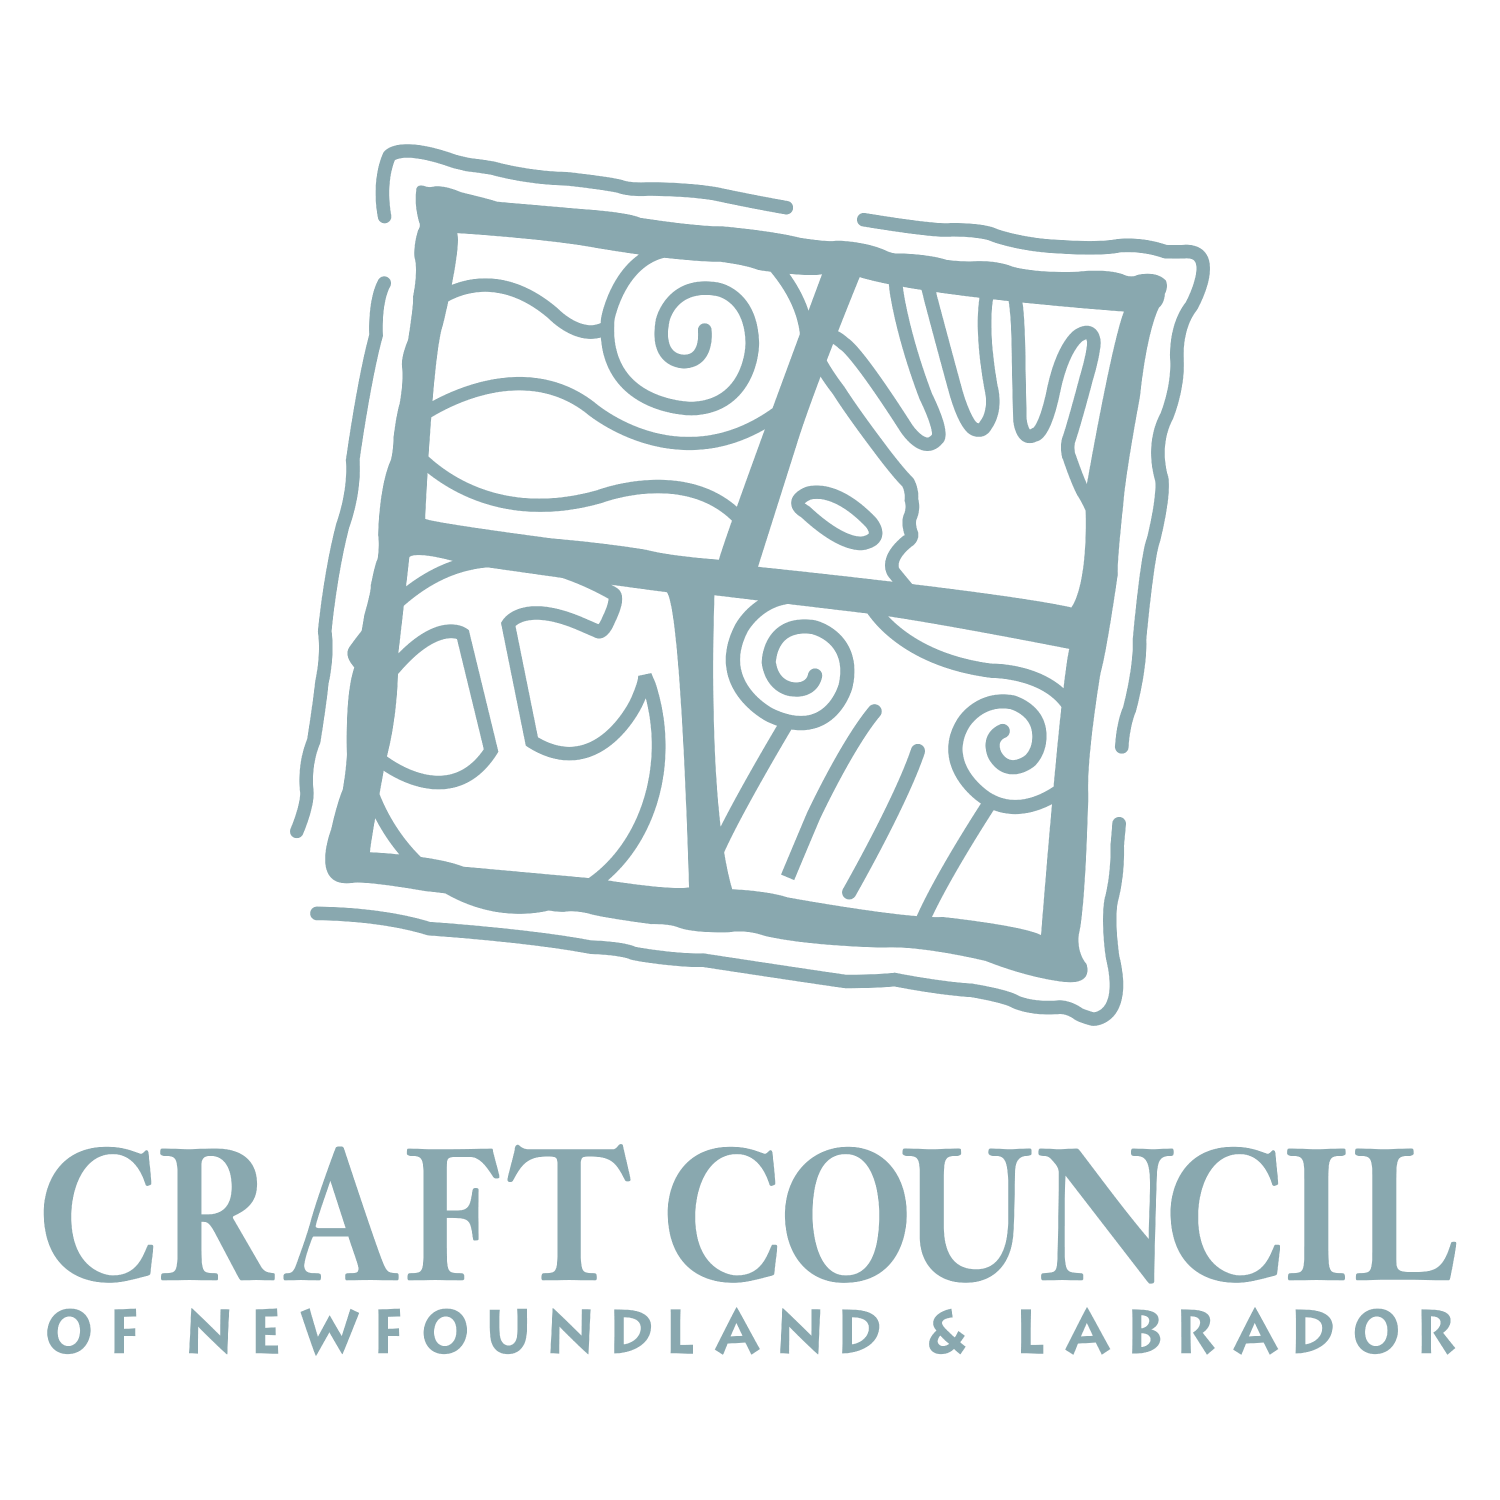 The Craft Council of Newfoundland and Labrador logo